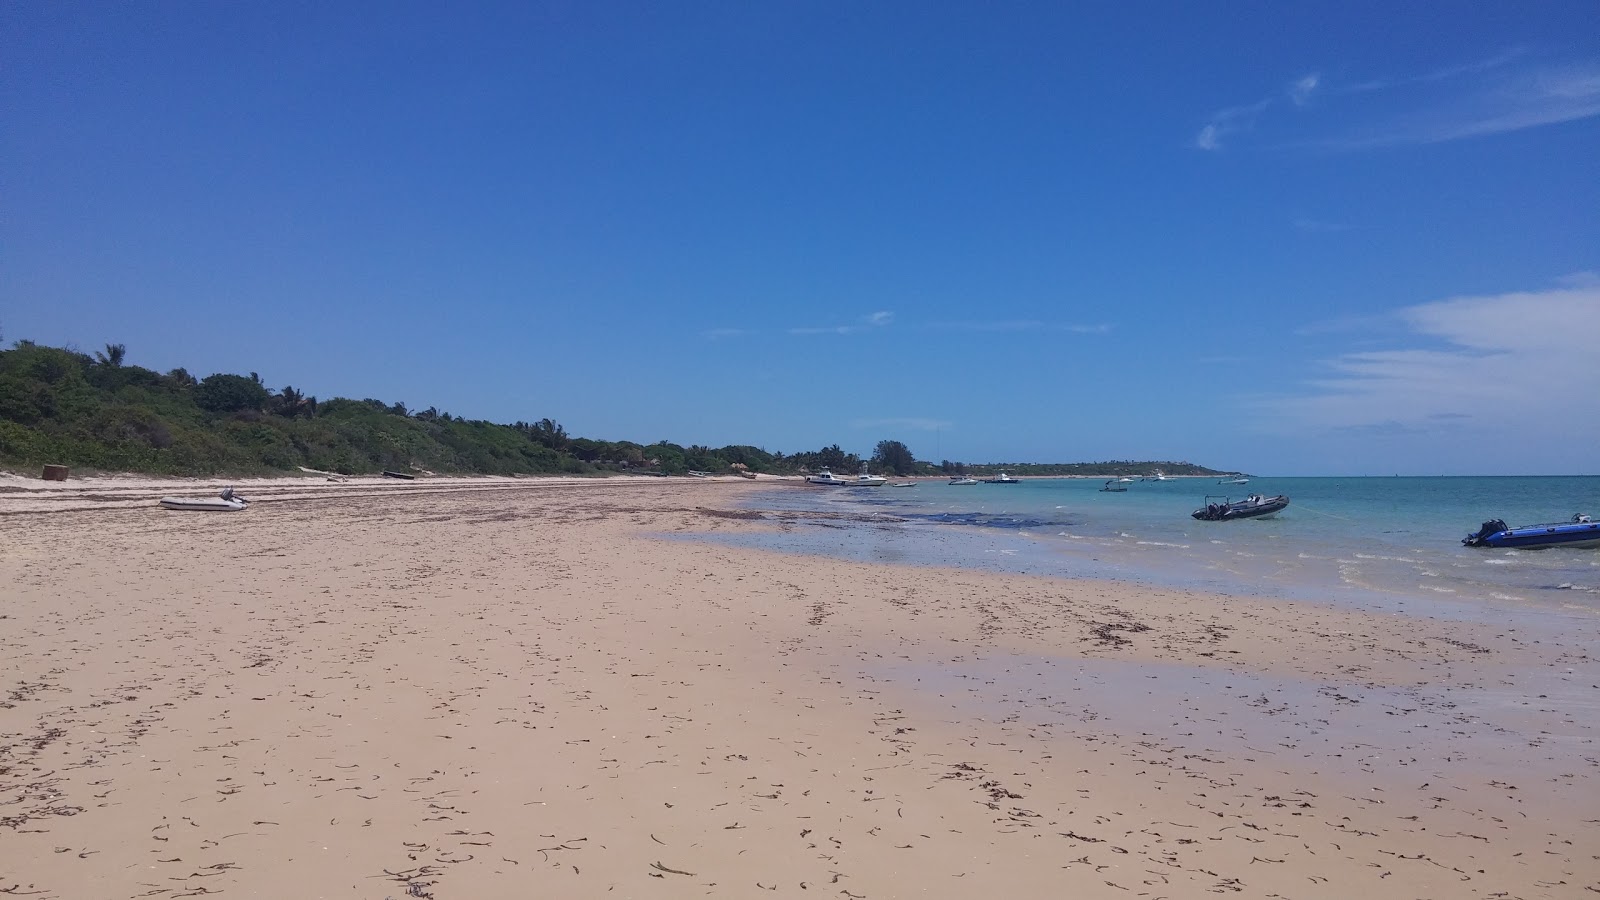 Foto af Vilankulos Beach - populært sted blandt afslapningskendere